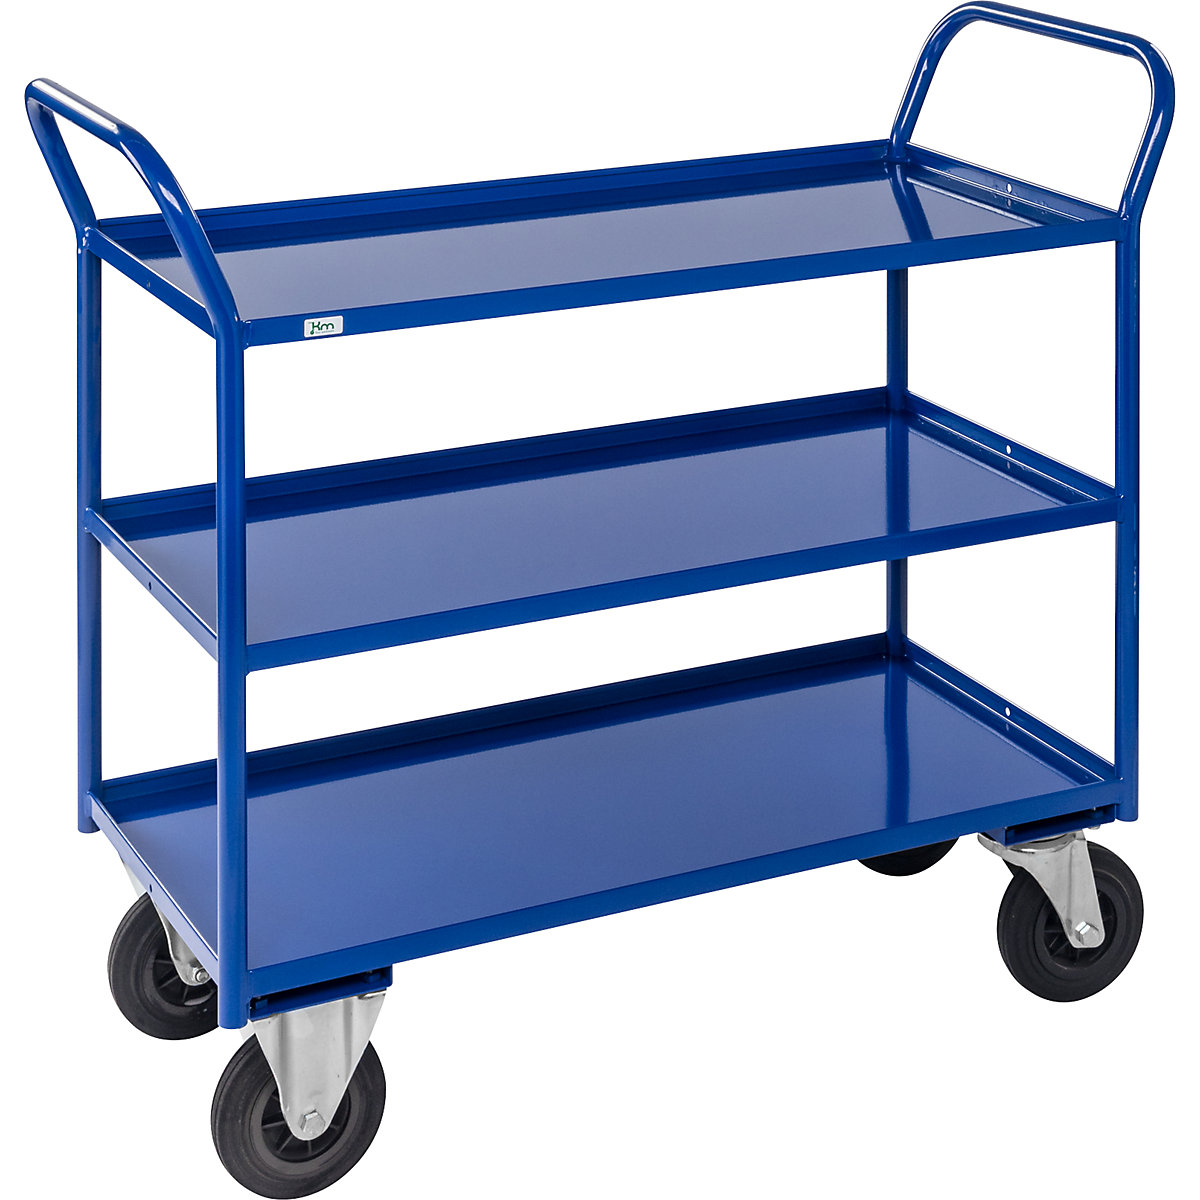 Stolový vozík KM41 – Kongamek, 3 etáže se zvýšenou hranou, d x š x v 1080 x 450 x 1000 mm, modrá, 2 otočná a 2 pevná kola, od 5 kusů-4